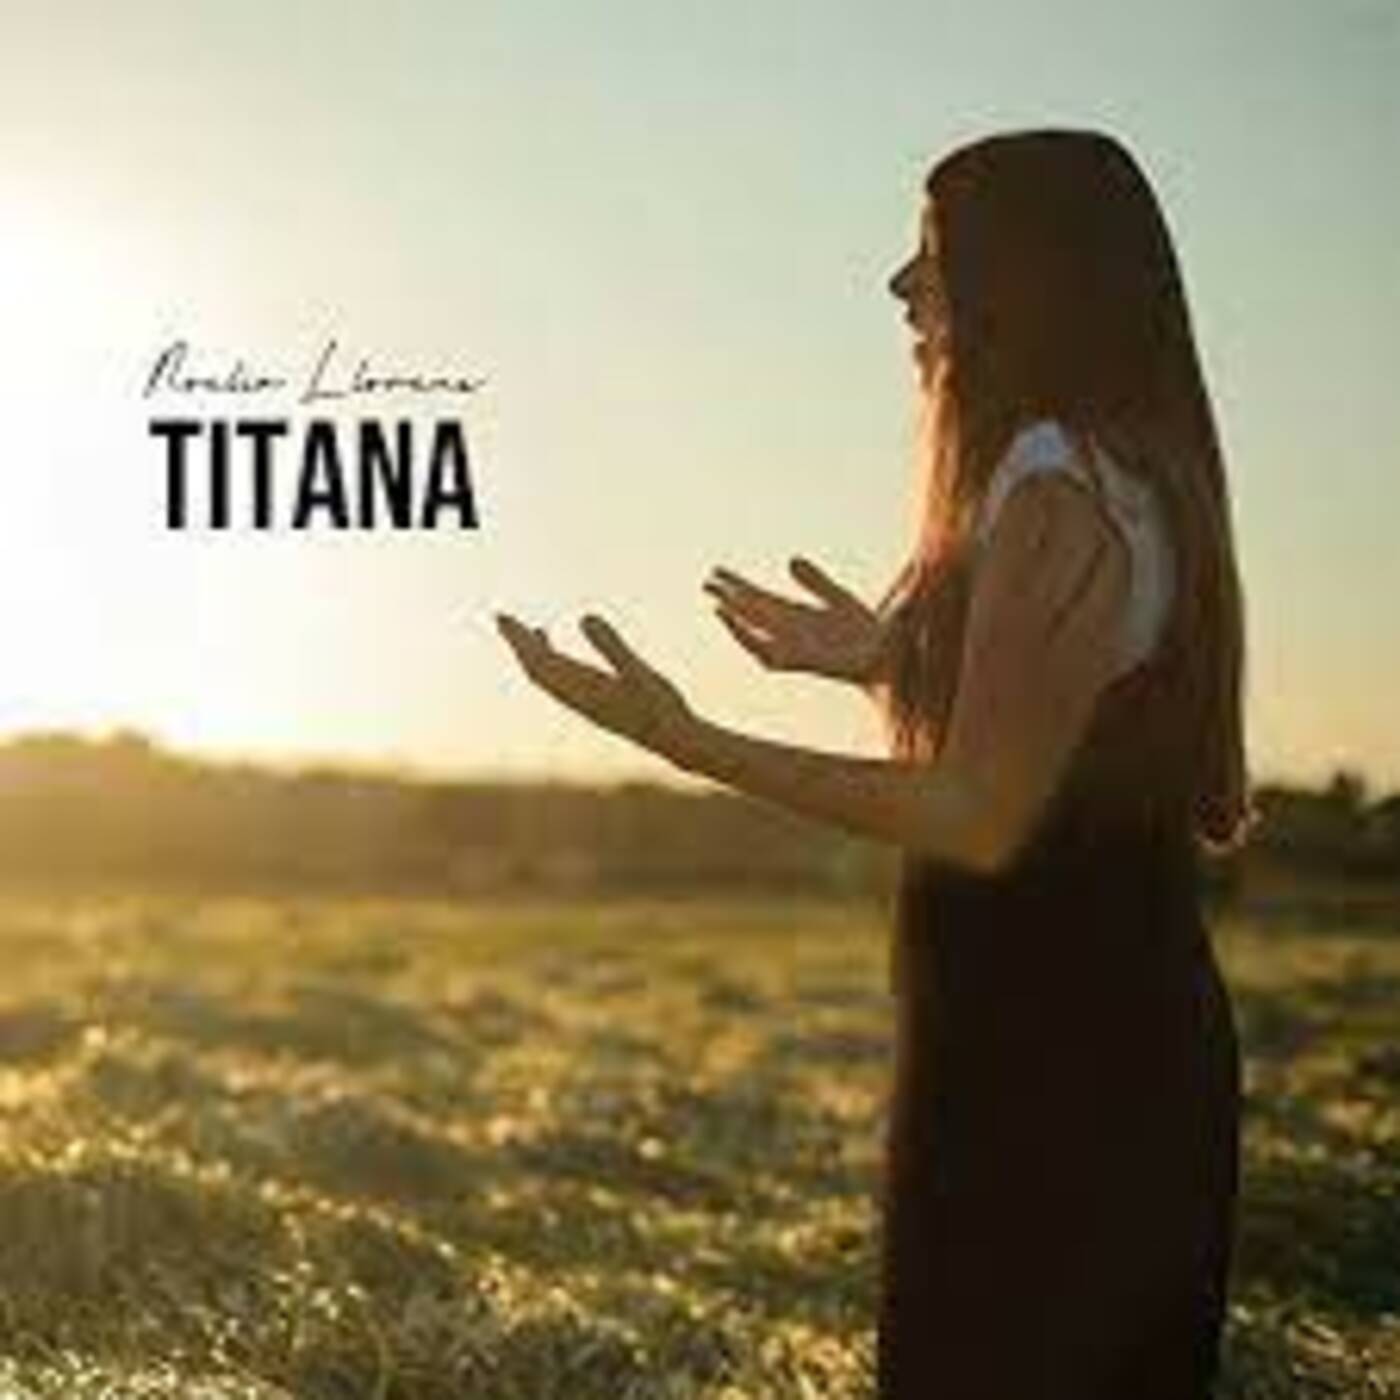 Noèlia Llorens "Titana" - Titana | musica en valencià